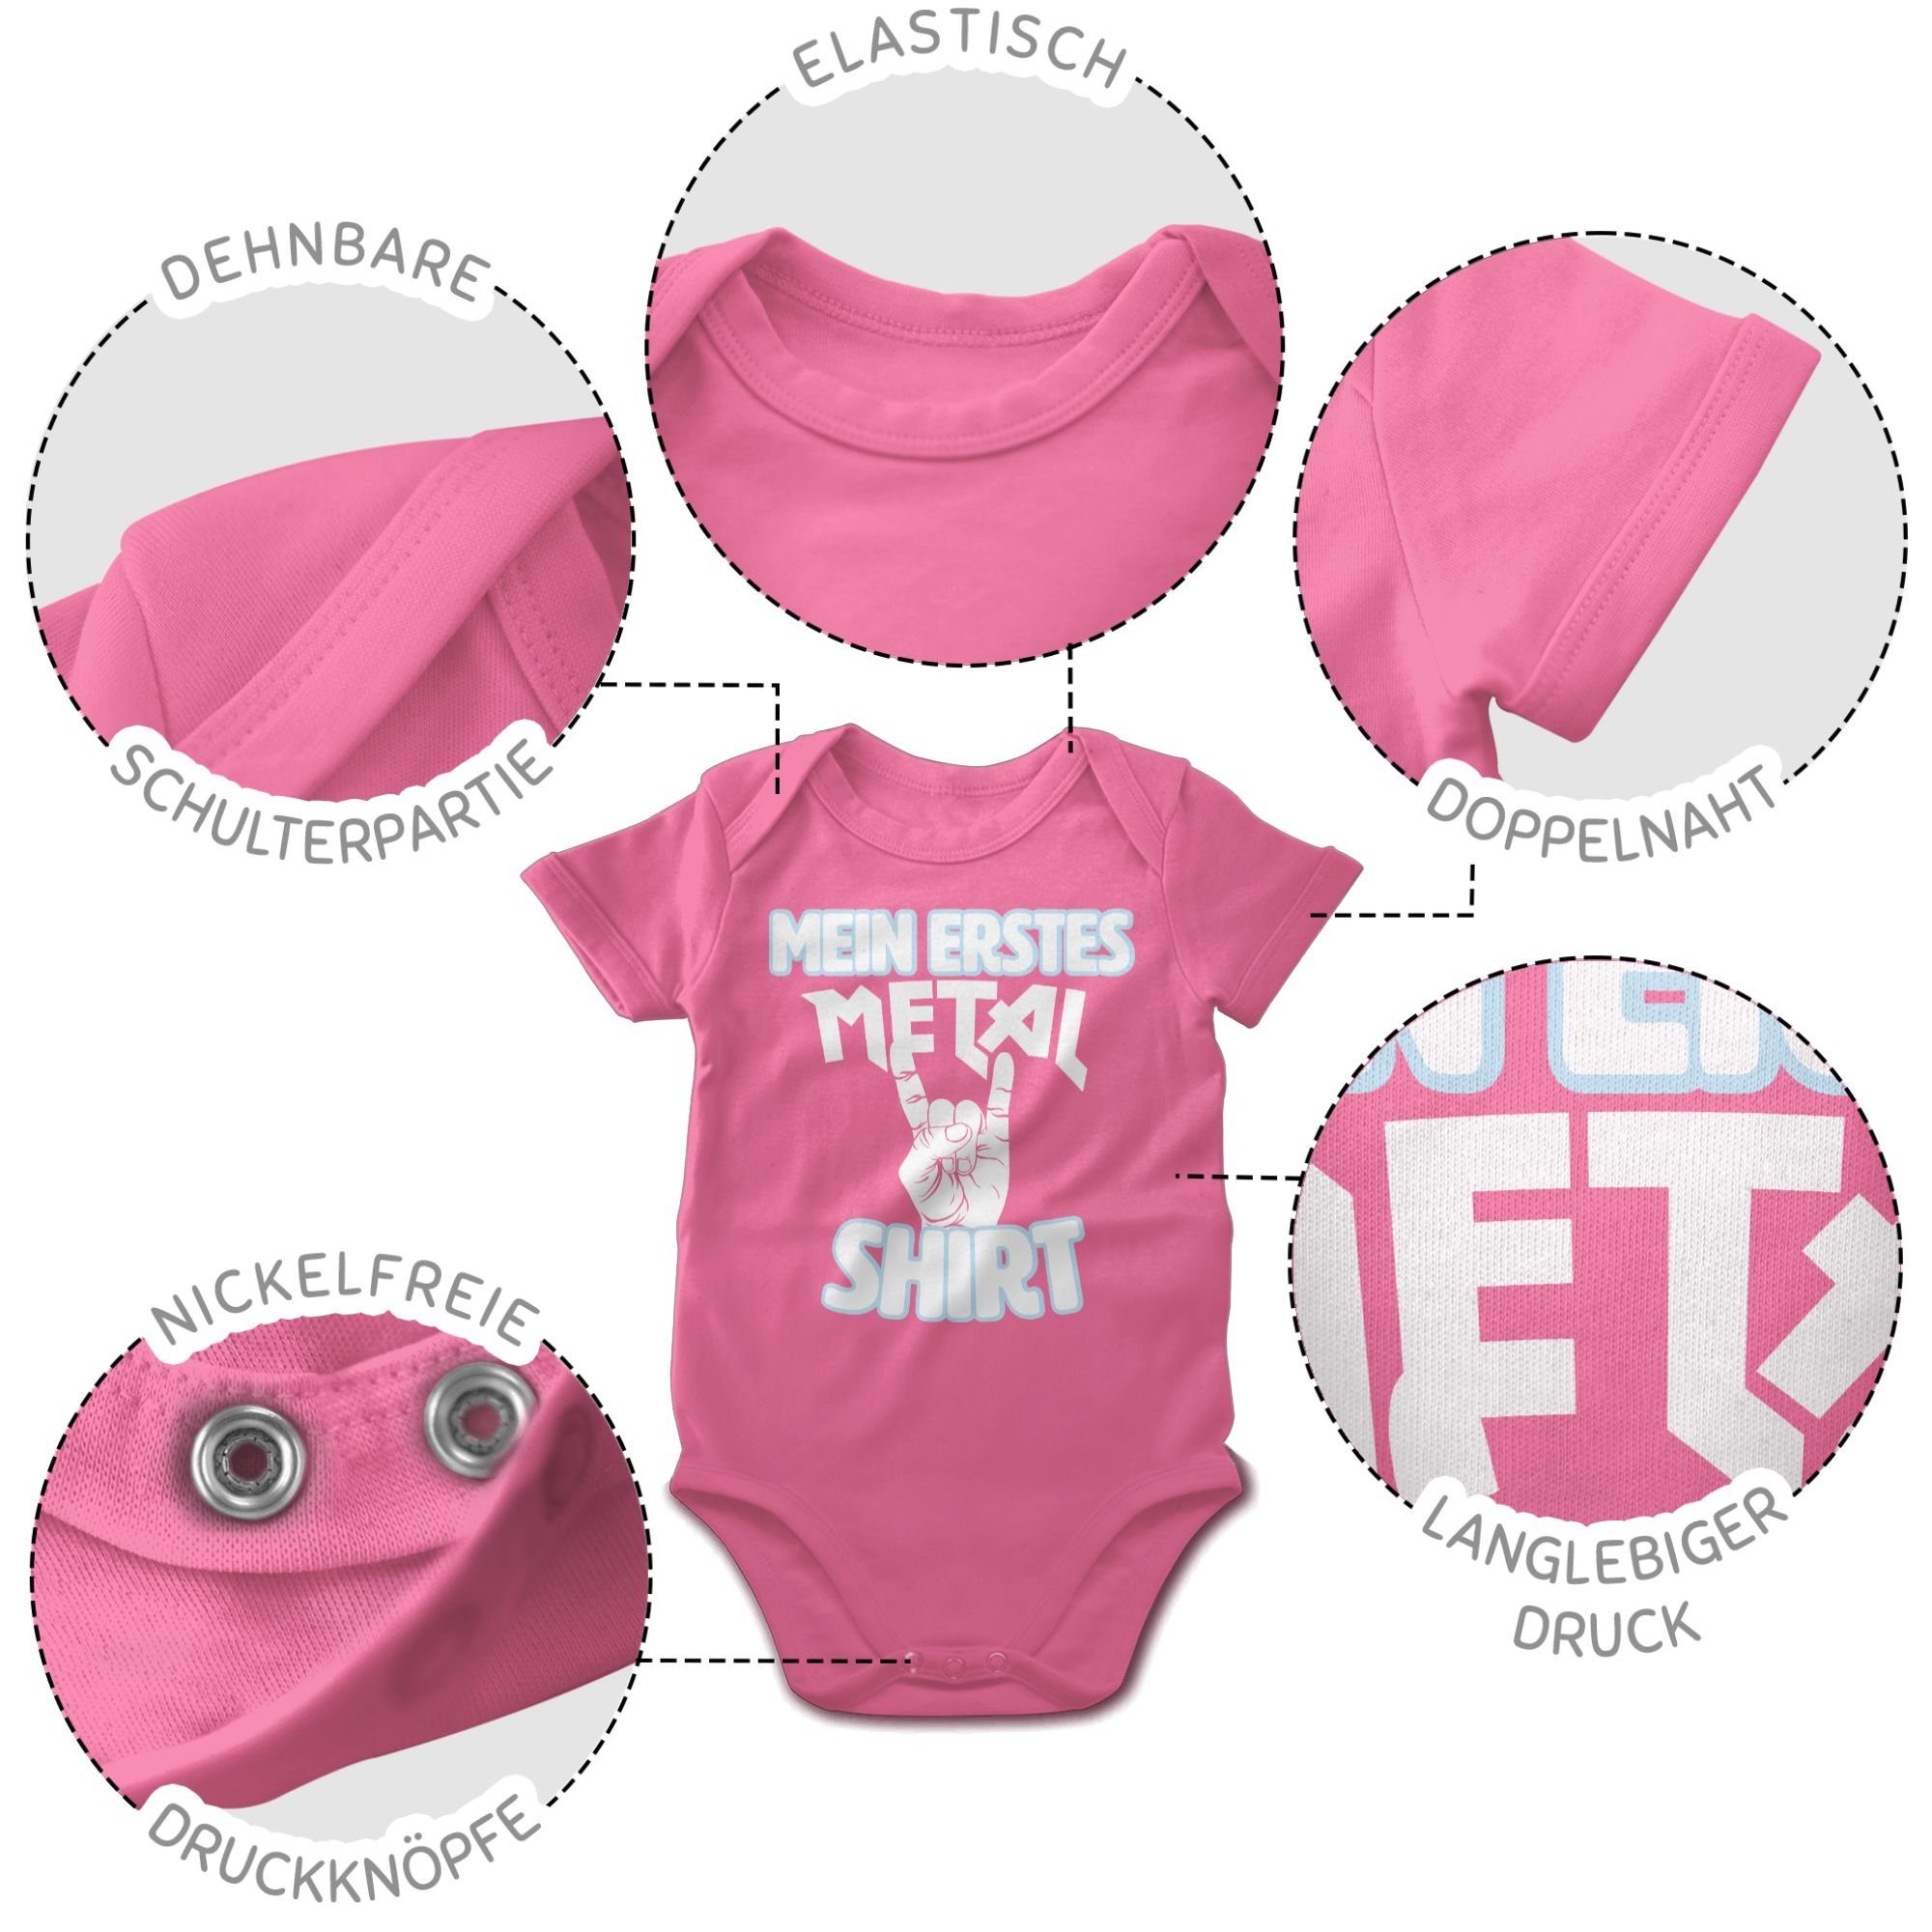 Shirt Mein 3 Sprüche Shirtracer Shirtbody erstes Pink weiß Metal Baby